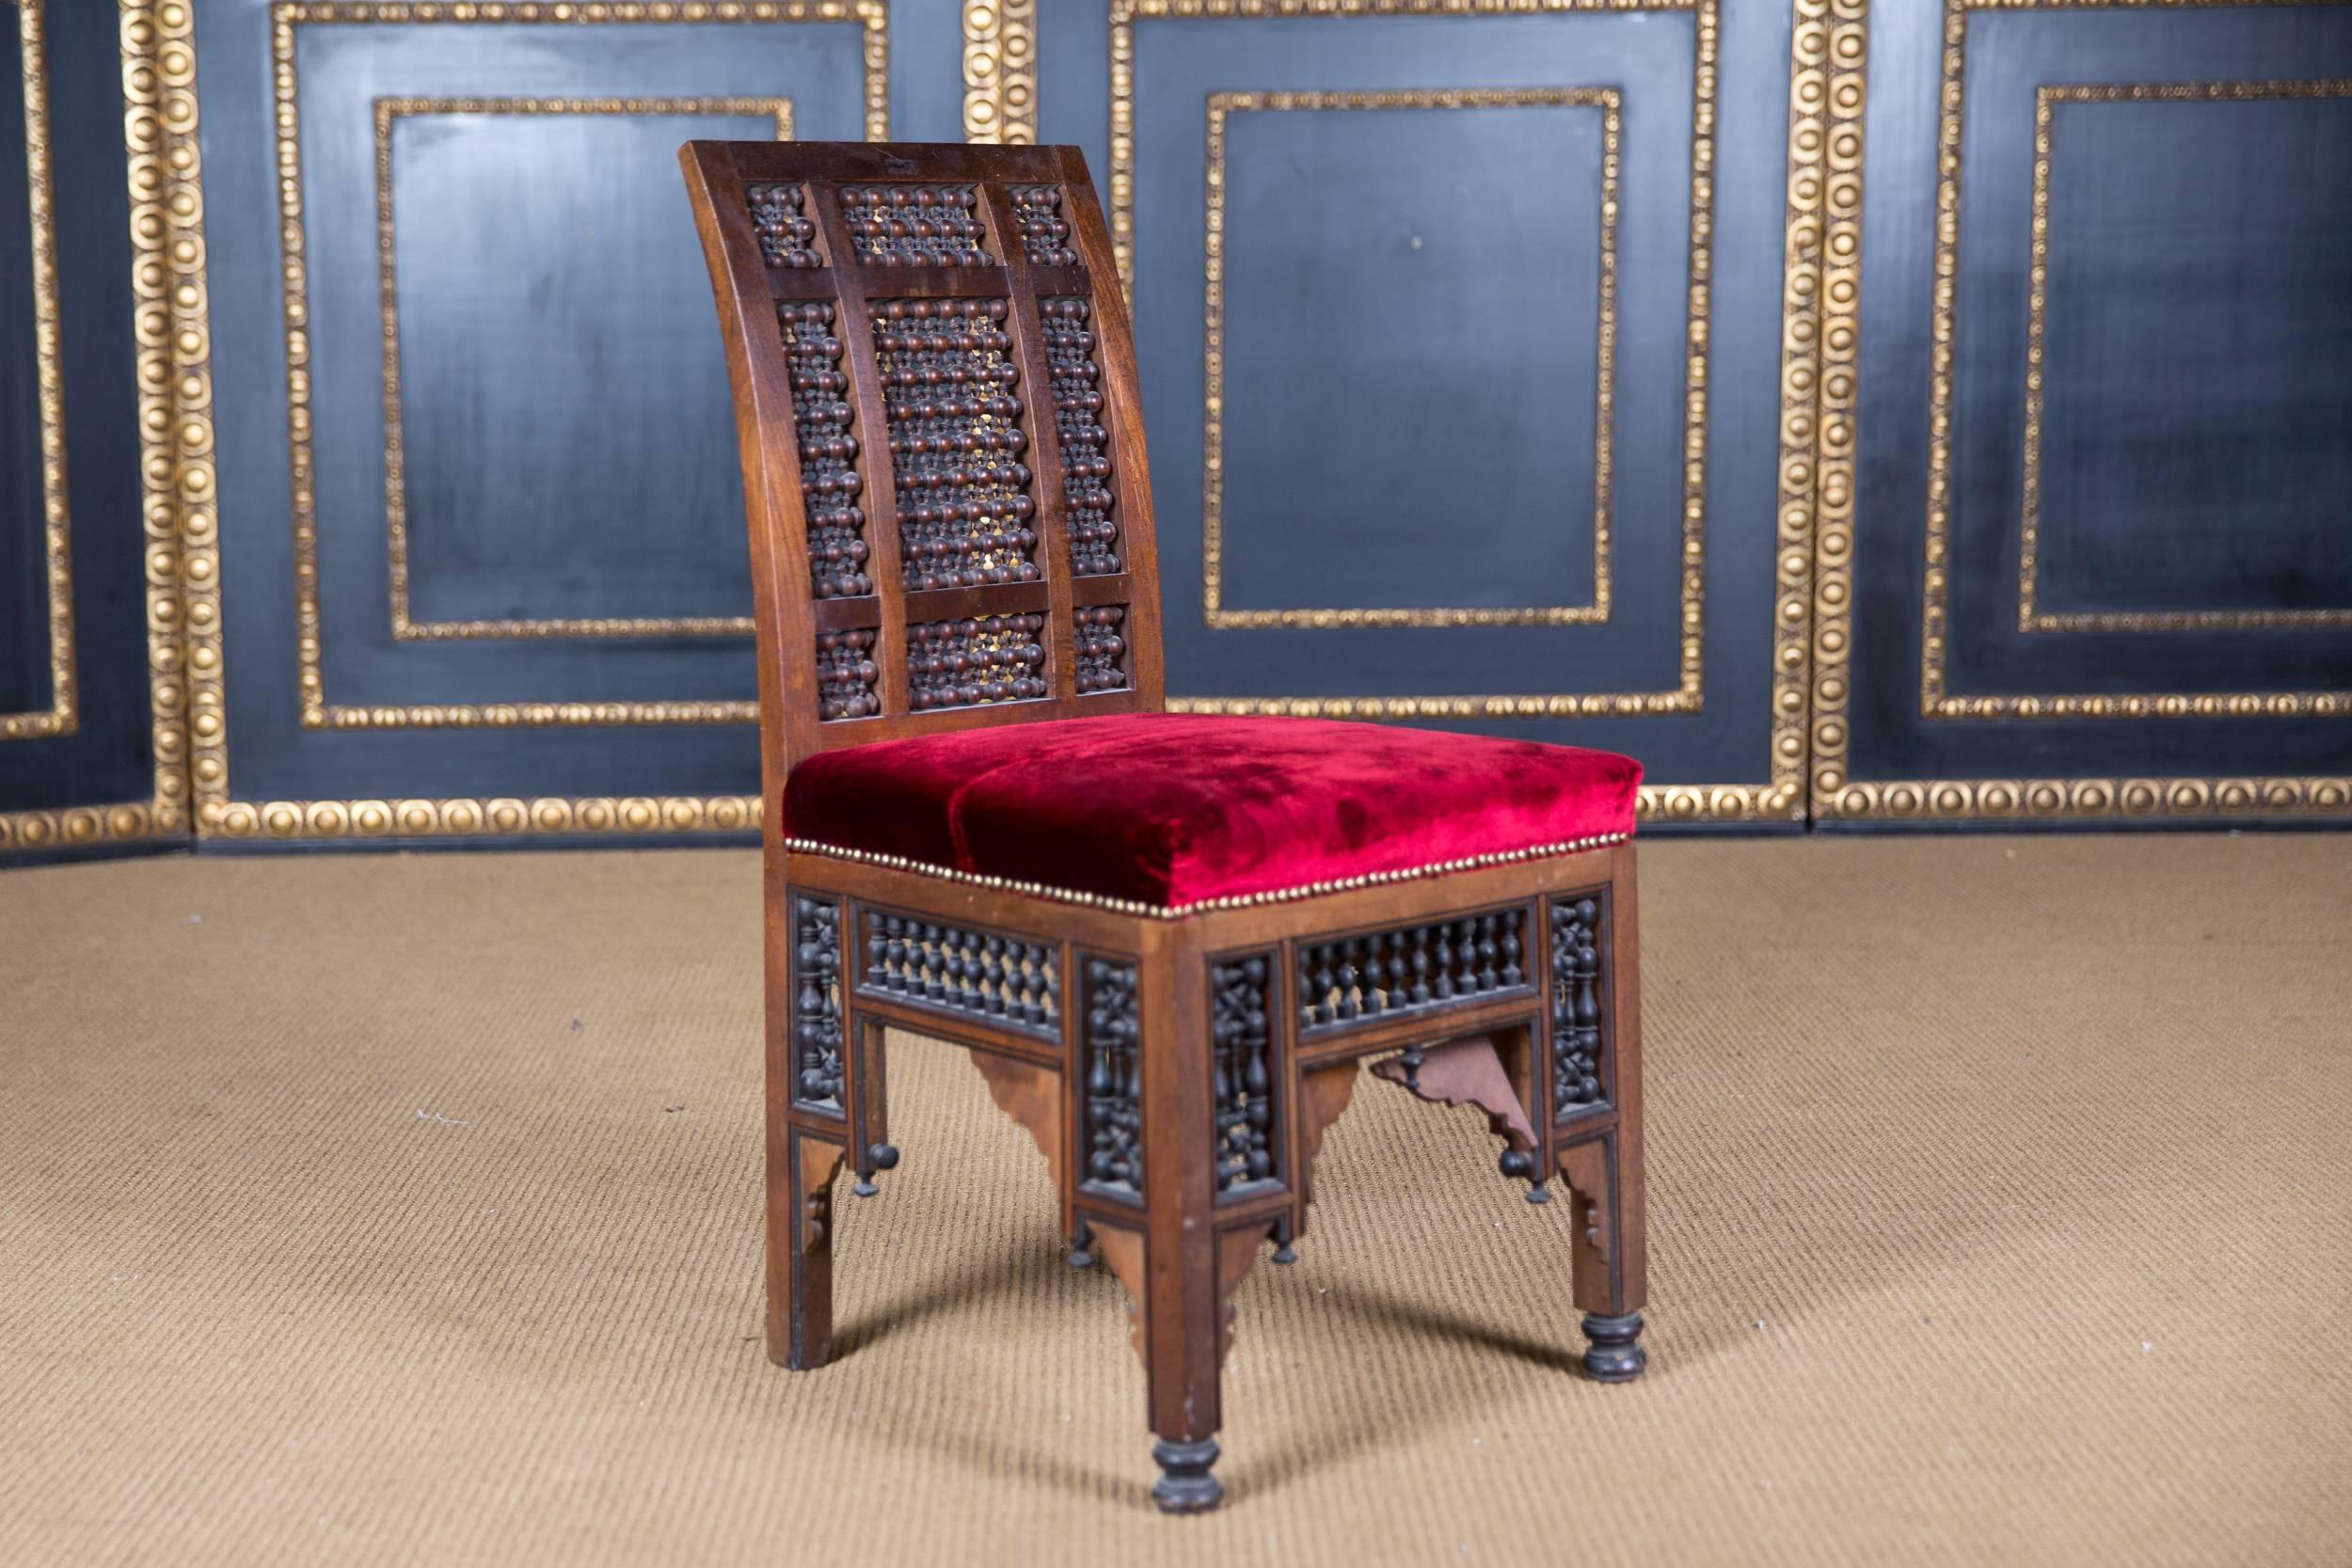 Massivholz mit verschiedenen Intarsien. Wunderschön gedreht.

Diese Art von Möbeln war im 19. Jahrhundert in Europa sehr beliebt.